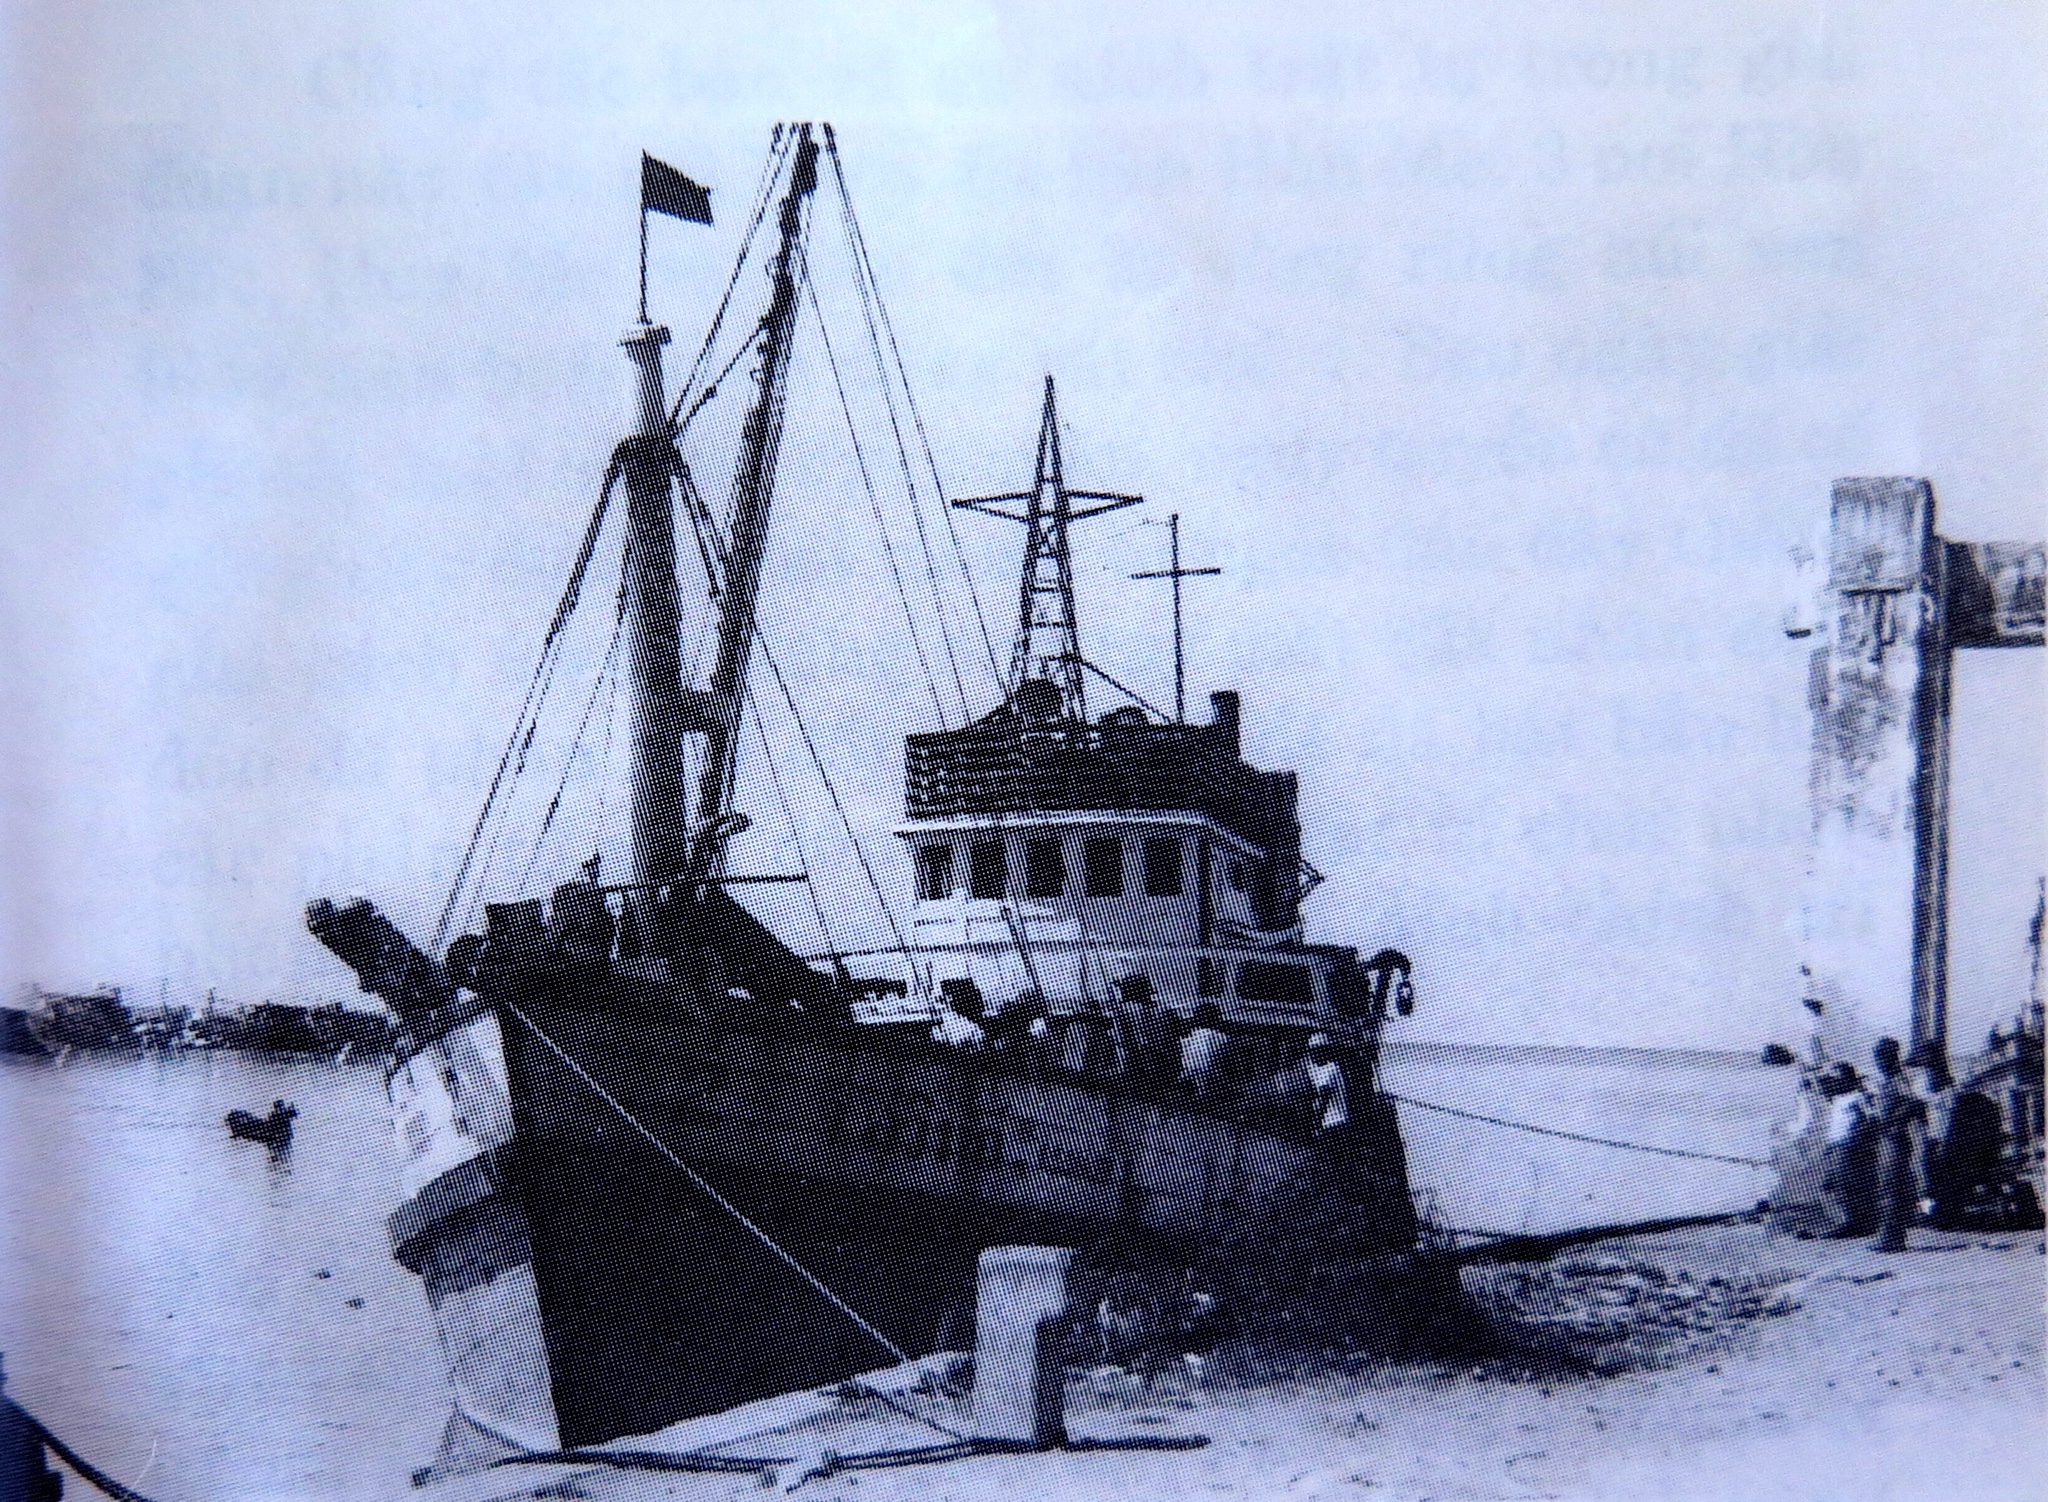 Tàu cá Thái Lan xâm nhập vùng biển Việt Nam đánh bắt trộm, bị bắt giữ tại Phú Quốc, Kiên Giang, năm 1990. (Hình: Tư liệu BĐBP Kiên Giang)